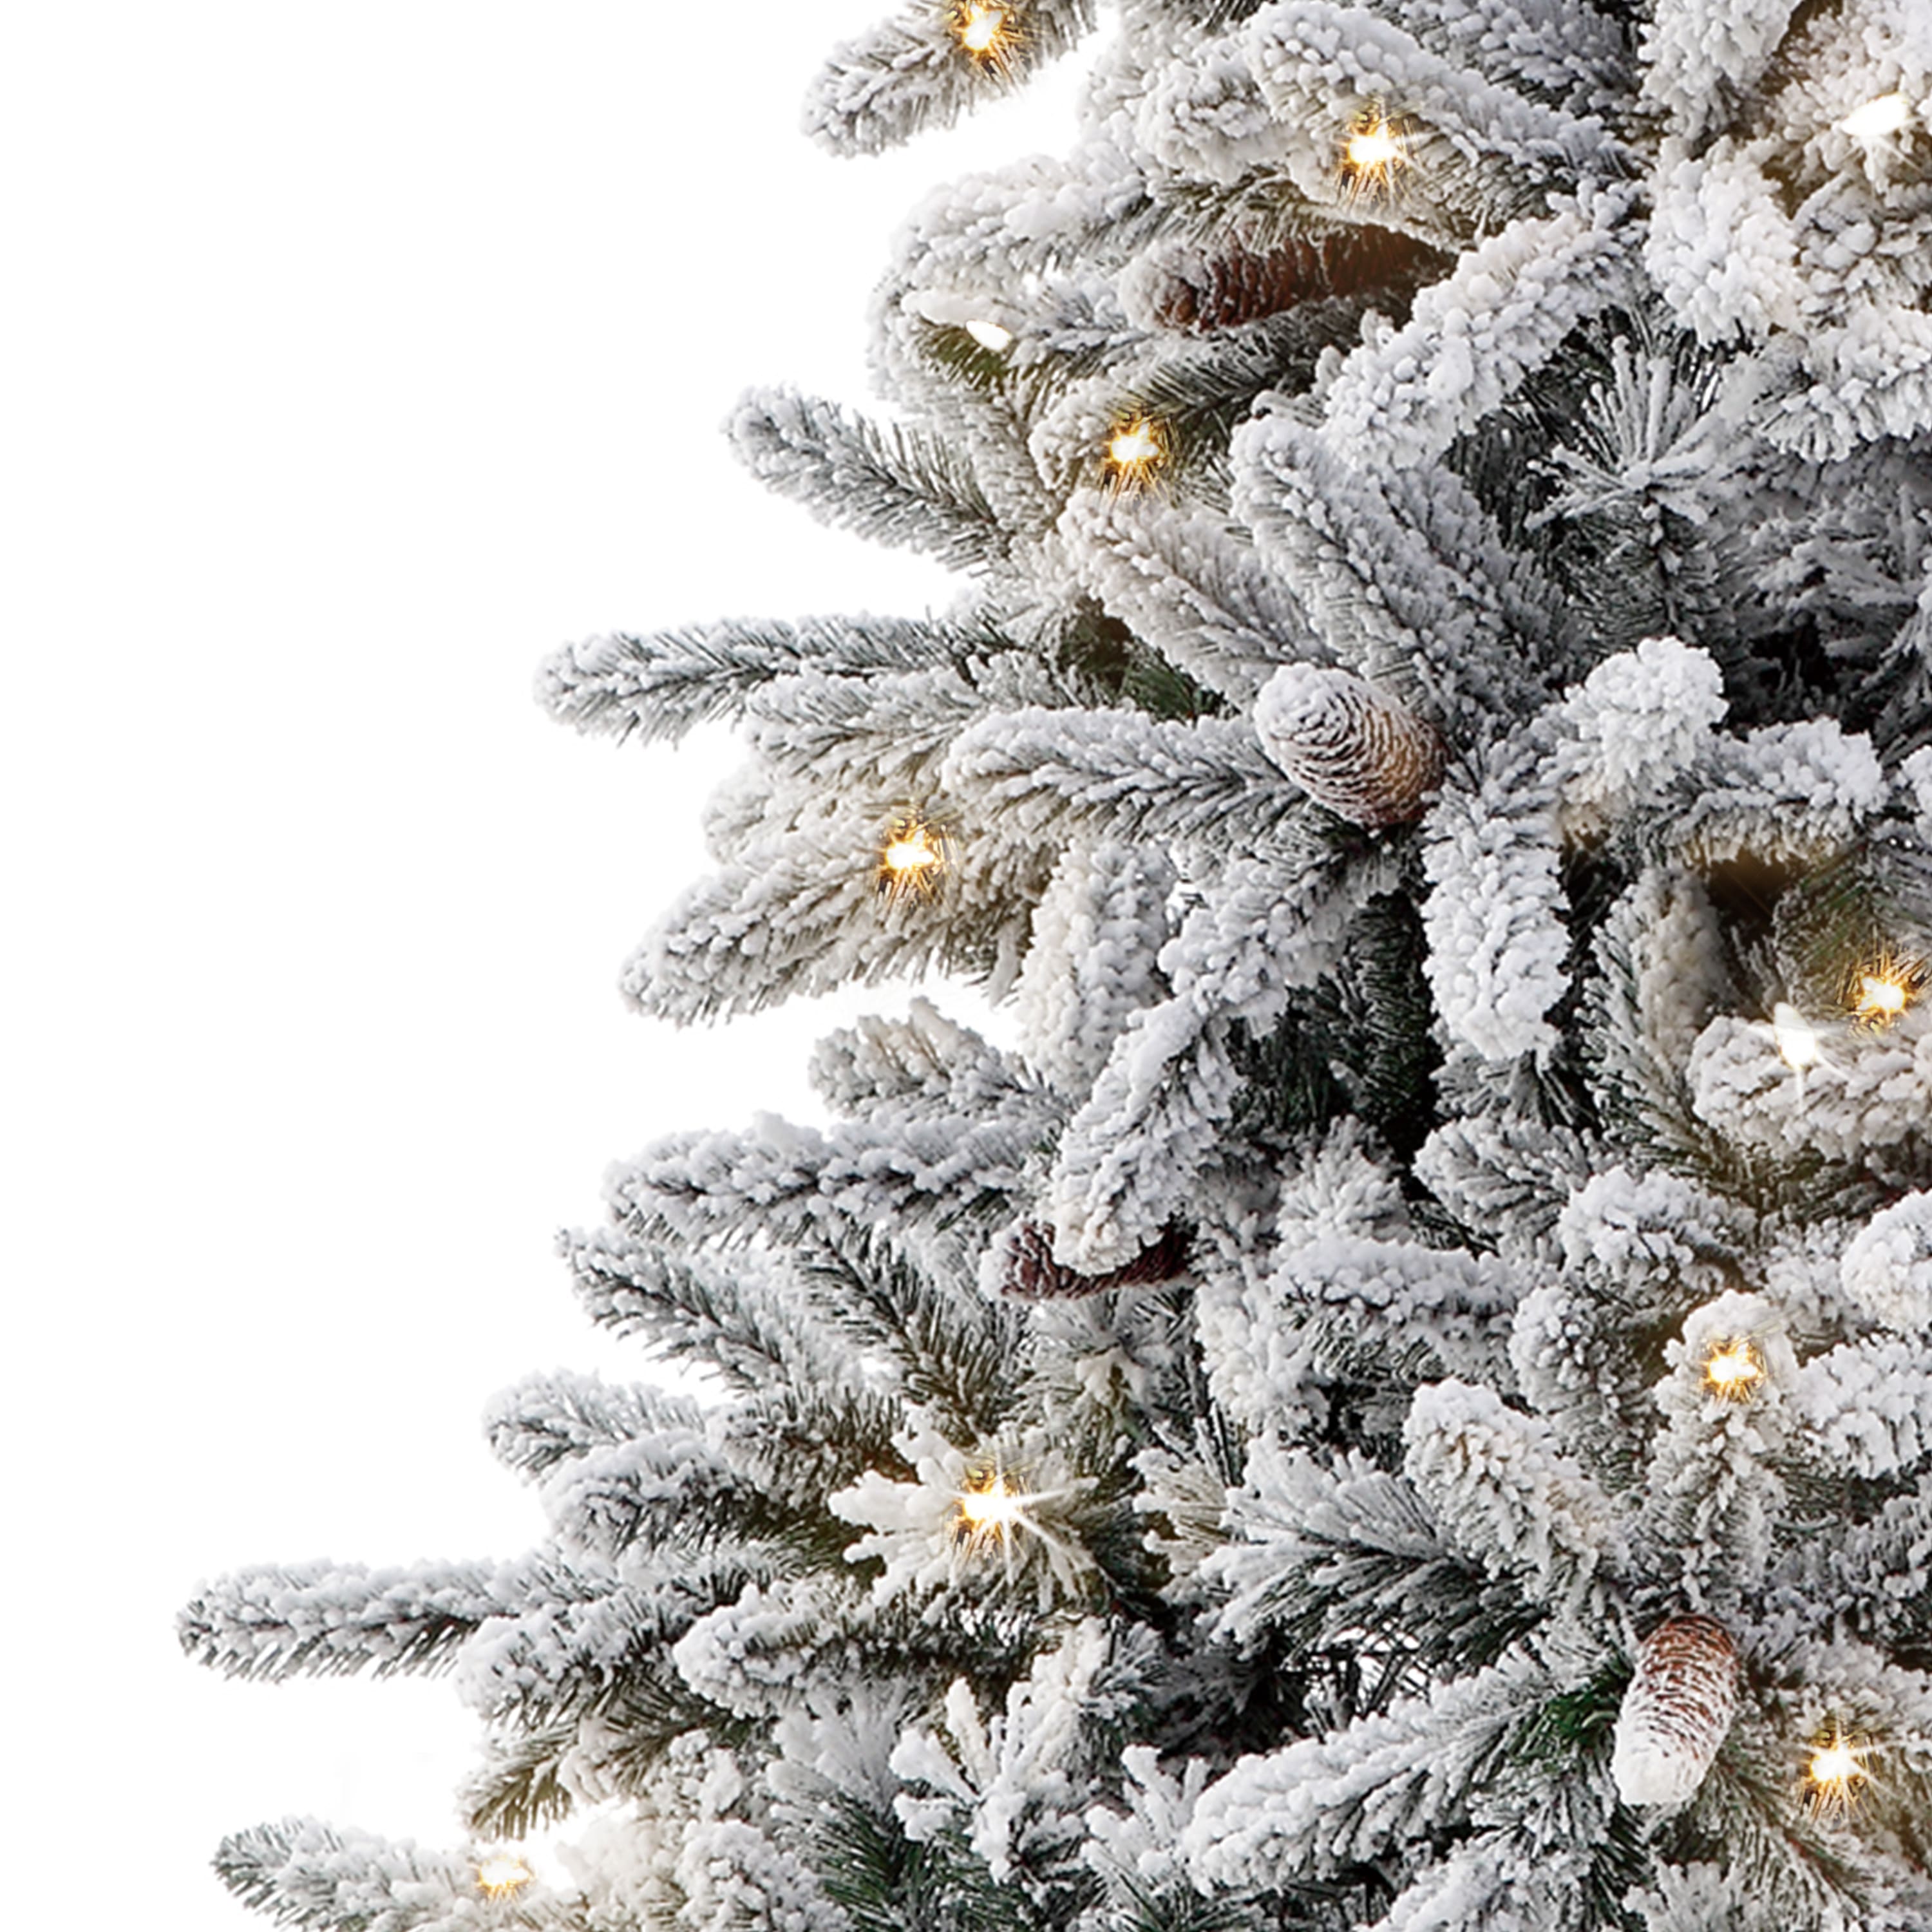 4.5ft. Pre-Lit Bennington Fir Artificial Christmas Tree, Clear Lights